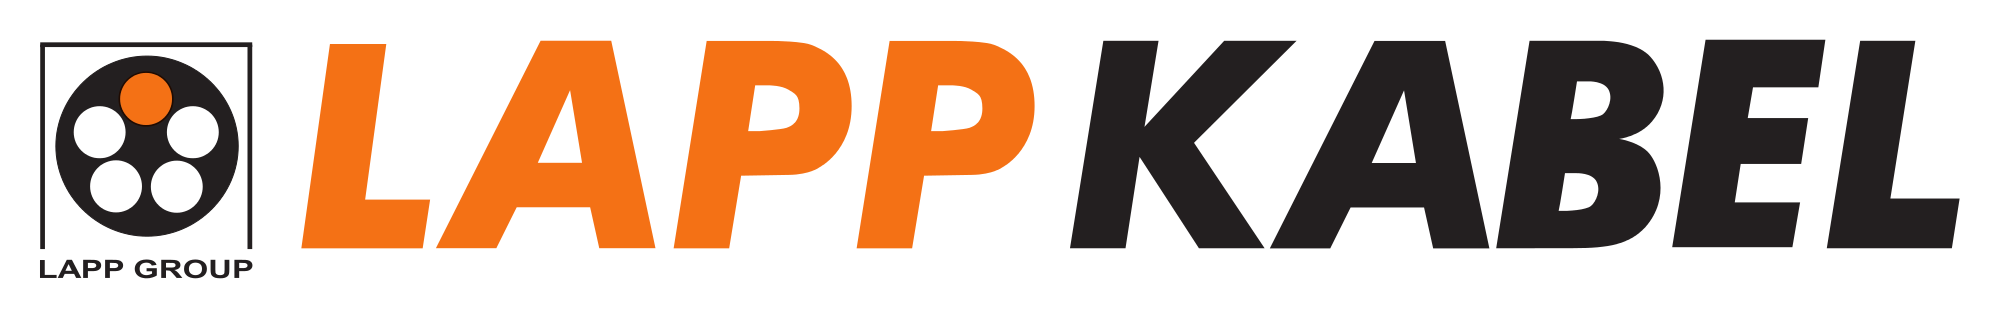 Lapp Kabel Logo.svg